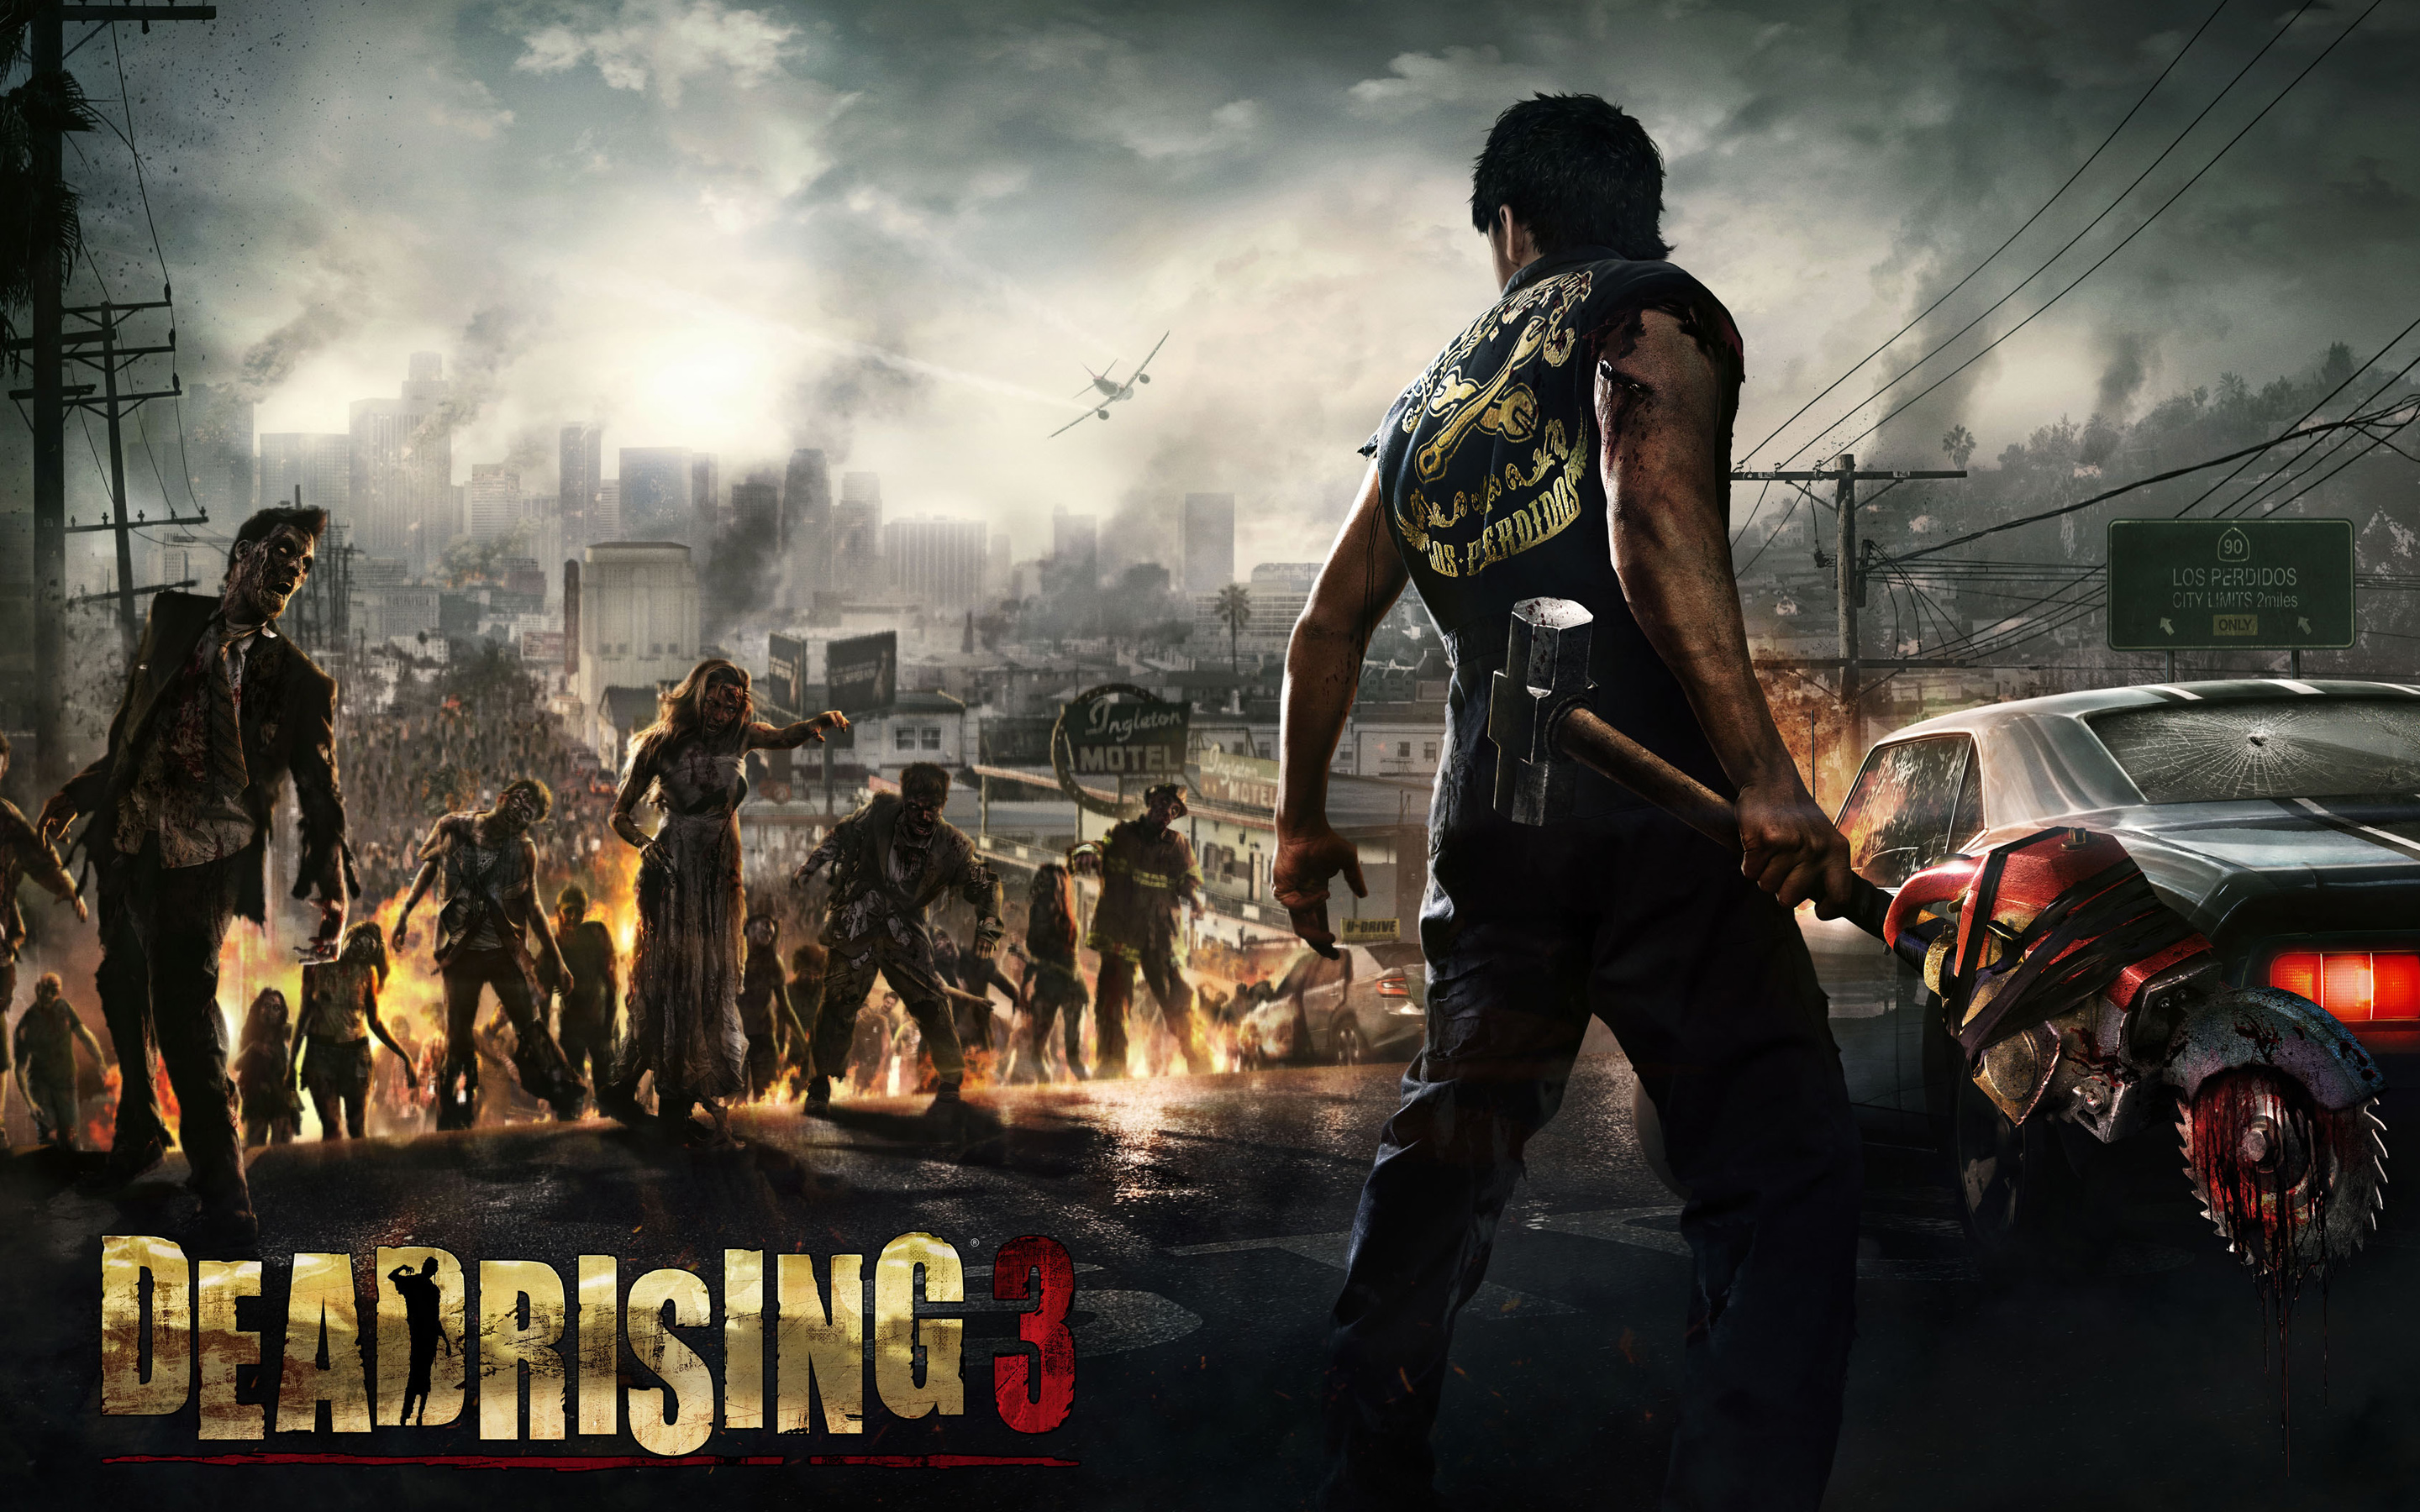 Dead Rising - PlayStation 4 Standard Edition